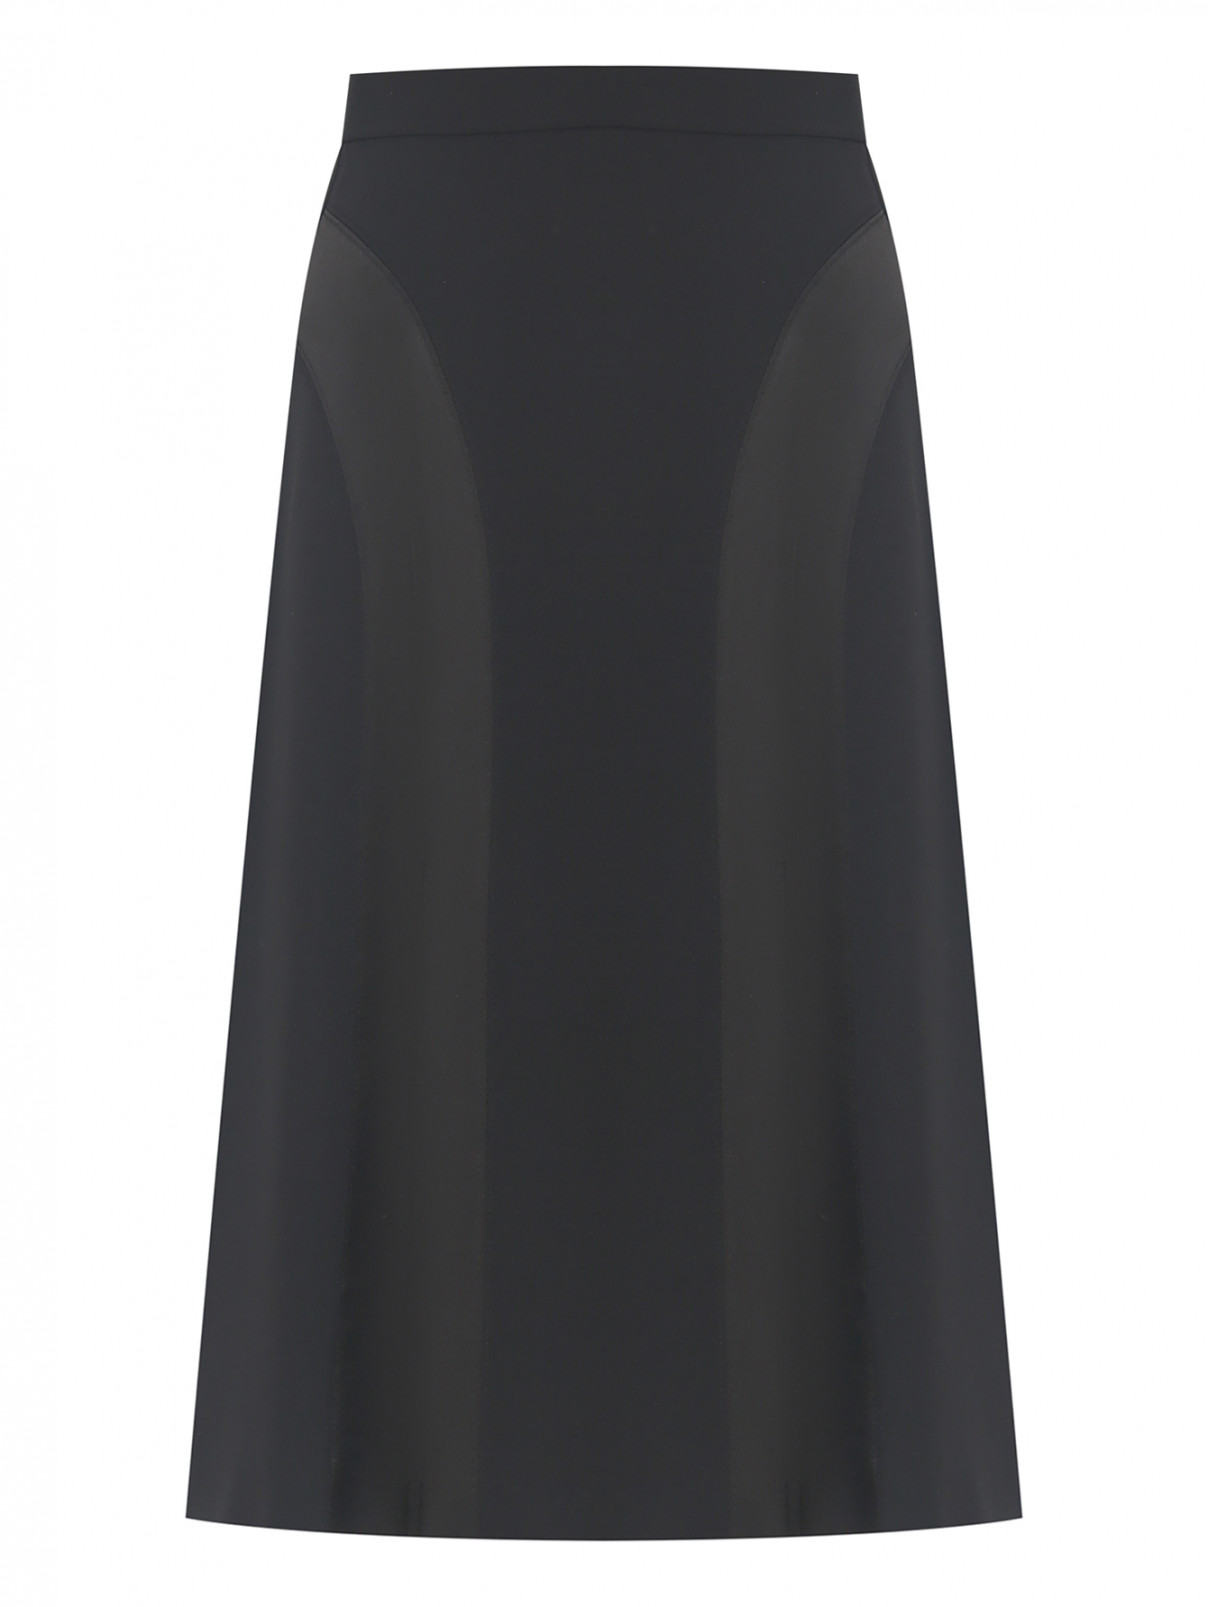 Комбинированная юбка-миди Moschino Boutique  –  Общий вид  – Цвет:  Черный